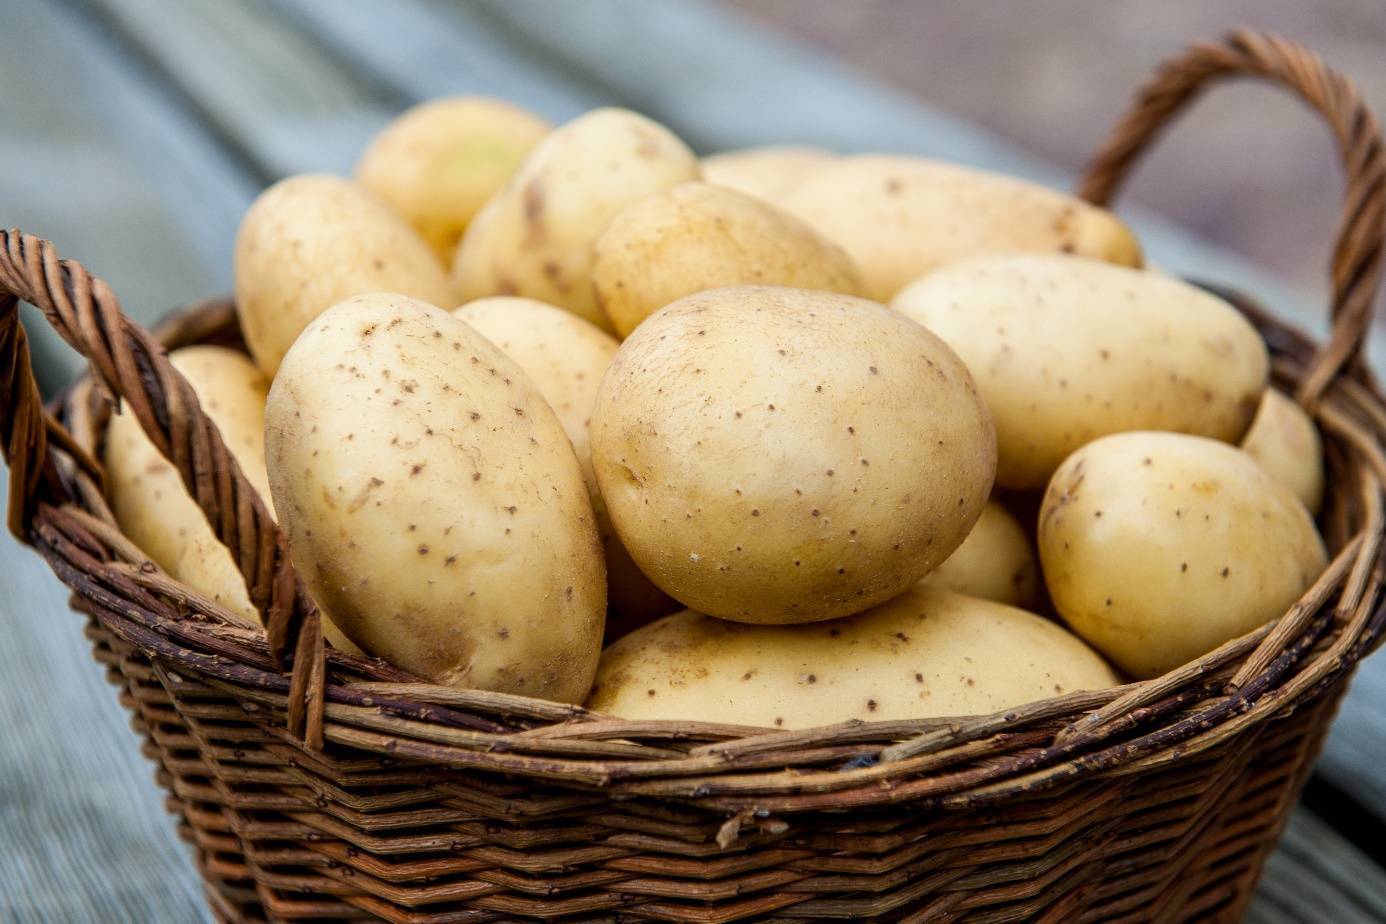 Пошаговая инструкция: как вырастить картофель из семян в домашних условиях